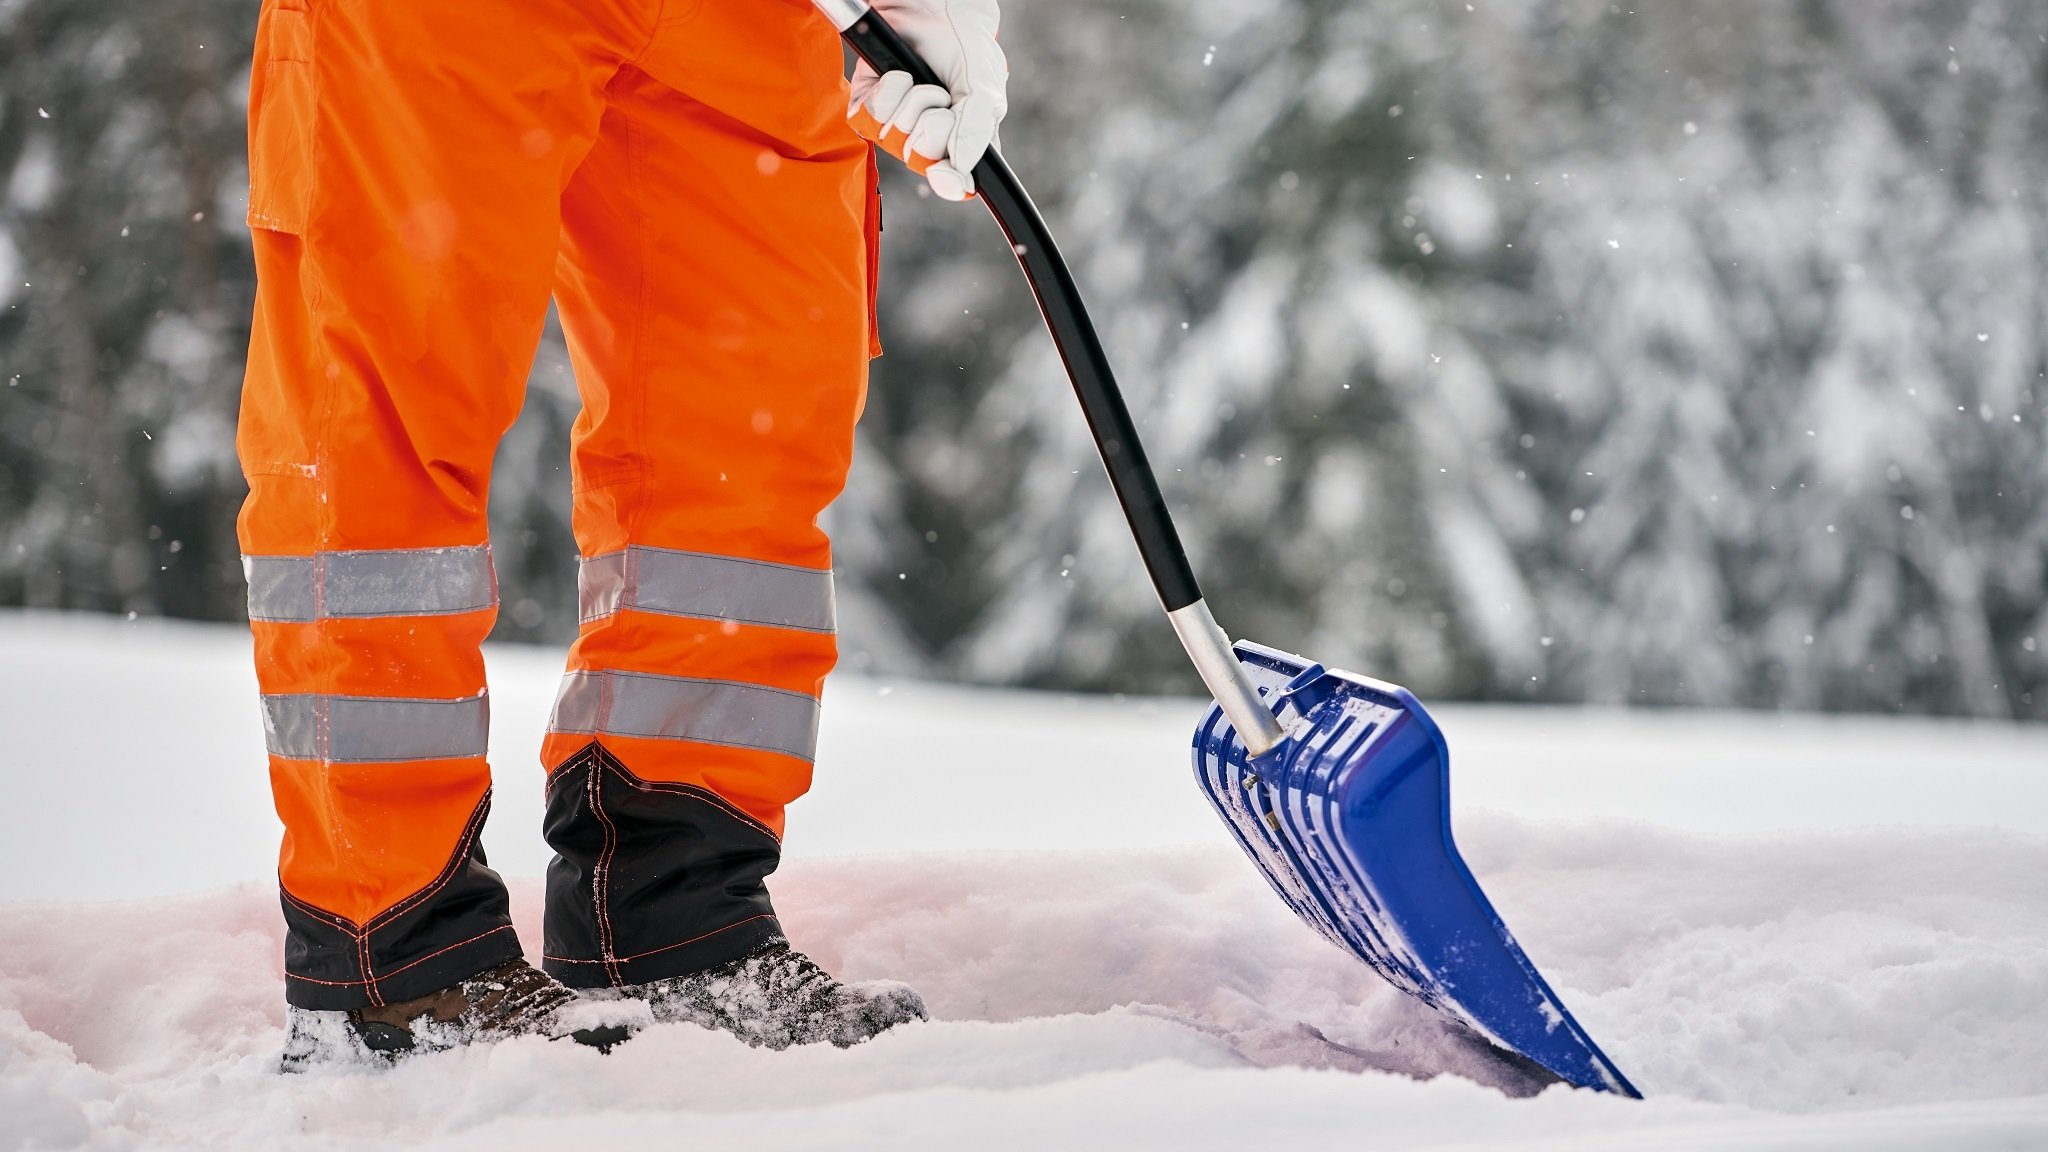 Winterdienst: Verkehrssicherungspflicht bei Eis und Schnee